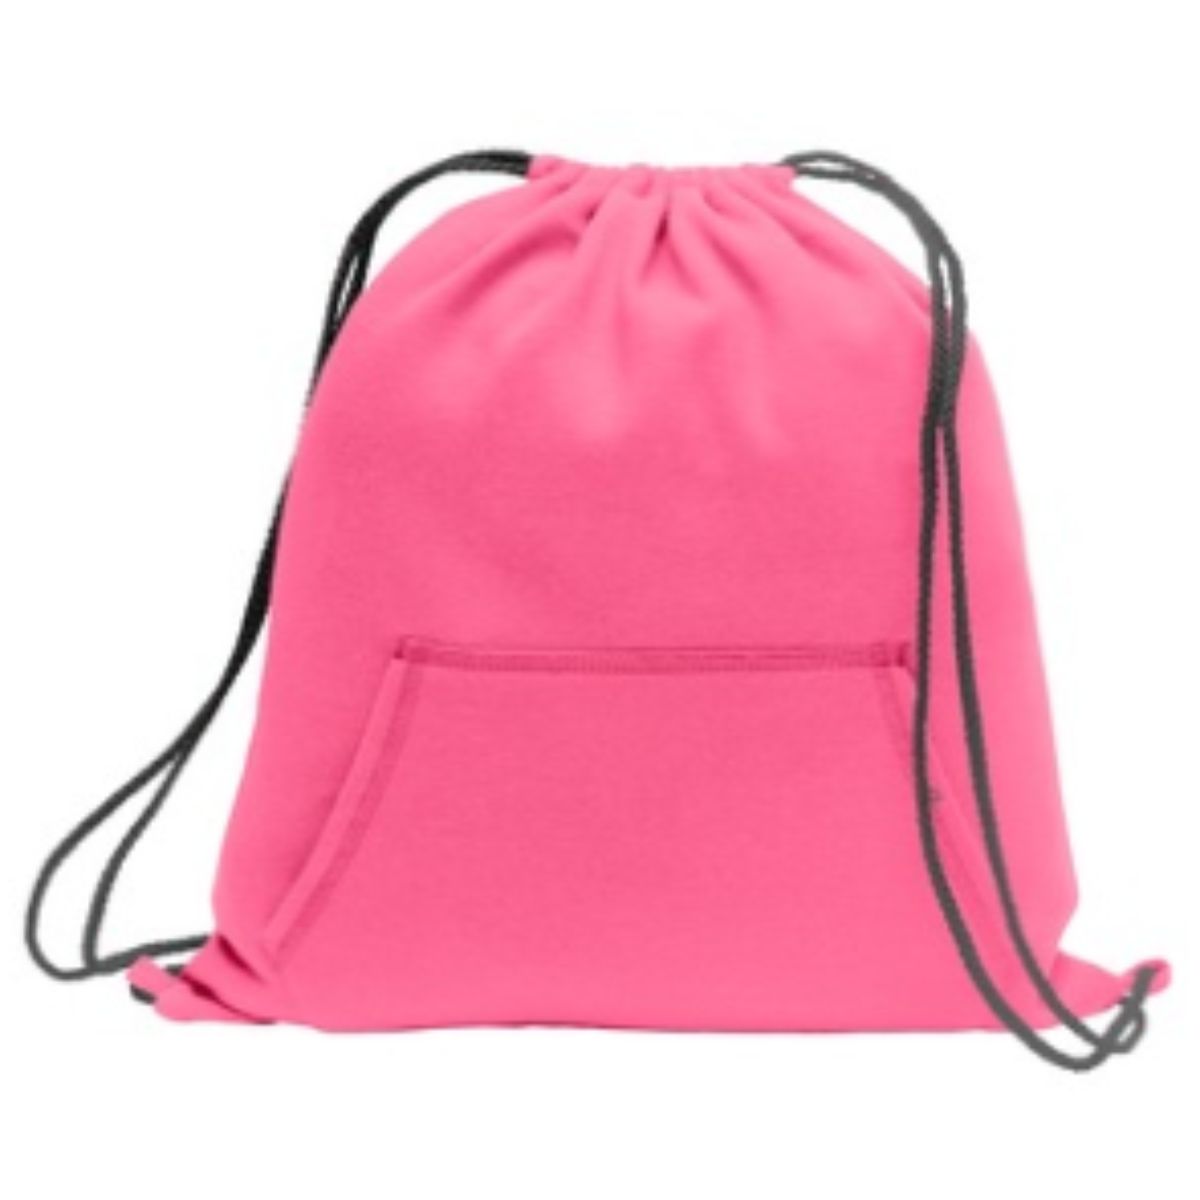 Sweatshirt Cinch Pack-Neon Pink - CraftCutterSupply.com